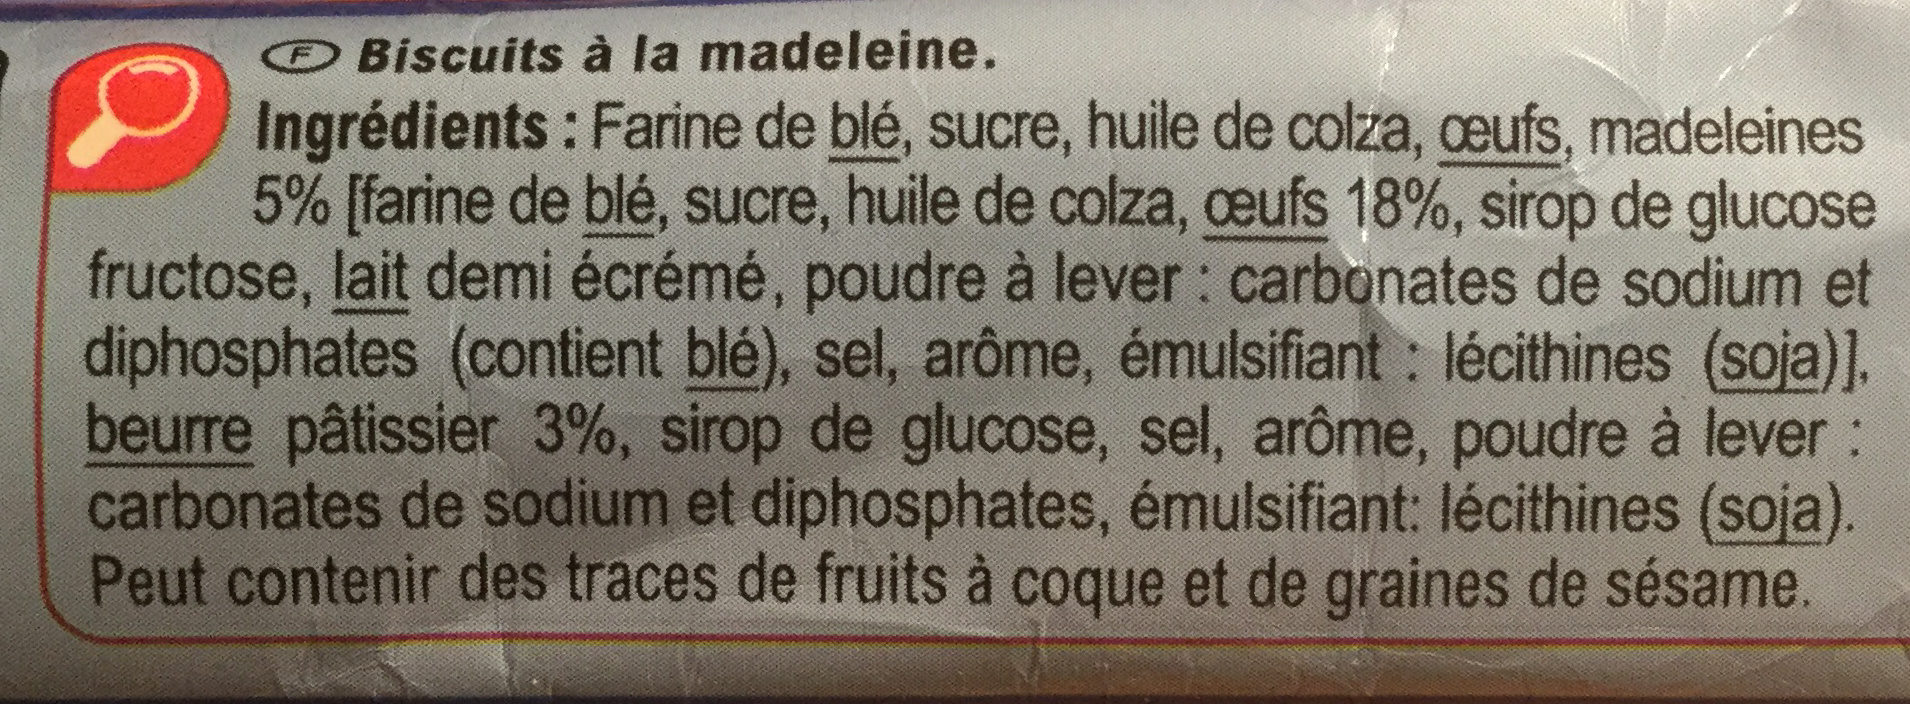 Les Palets Recette à la Madeleine - Ingredientes - fr